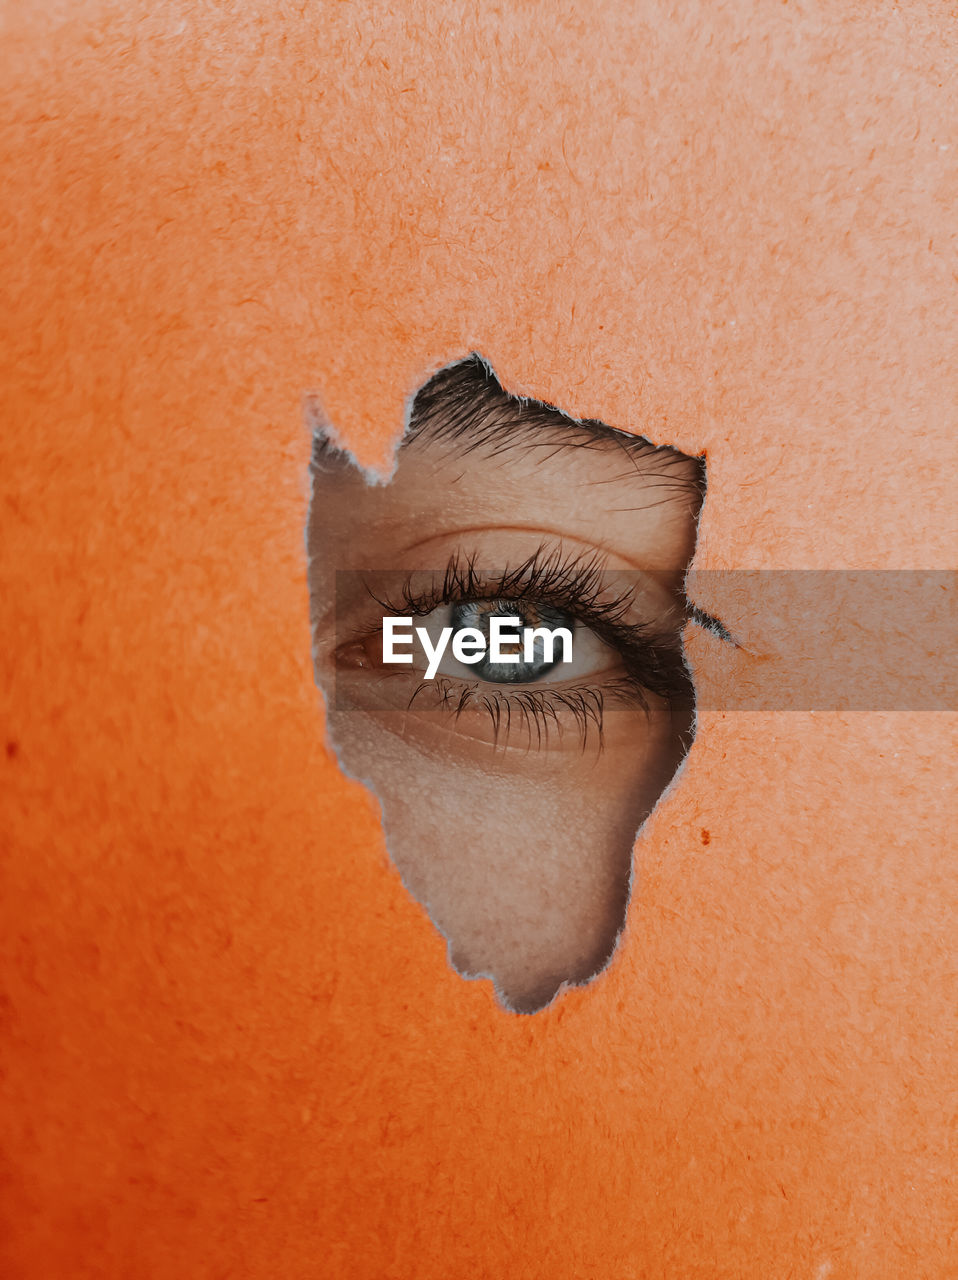 Close-up eye peeking through torn orange paper